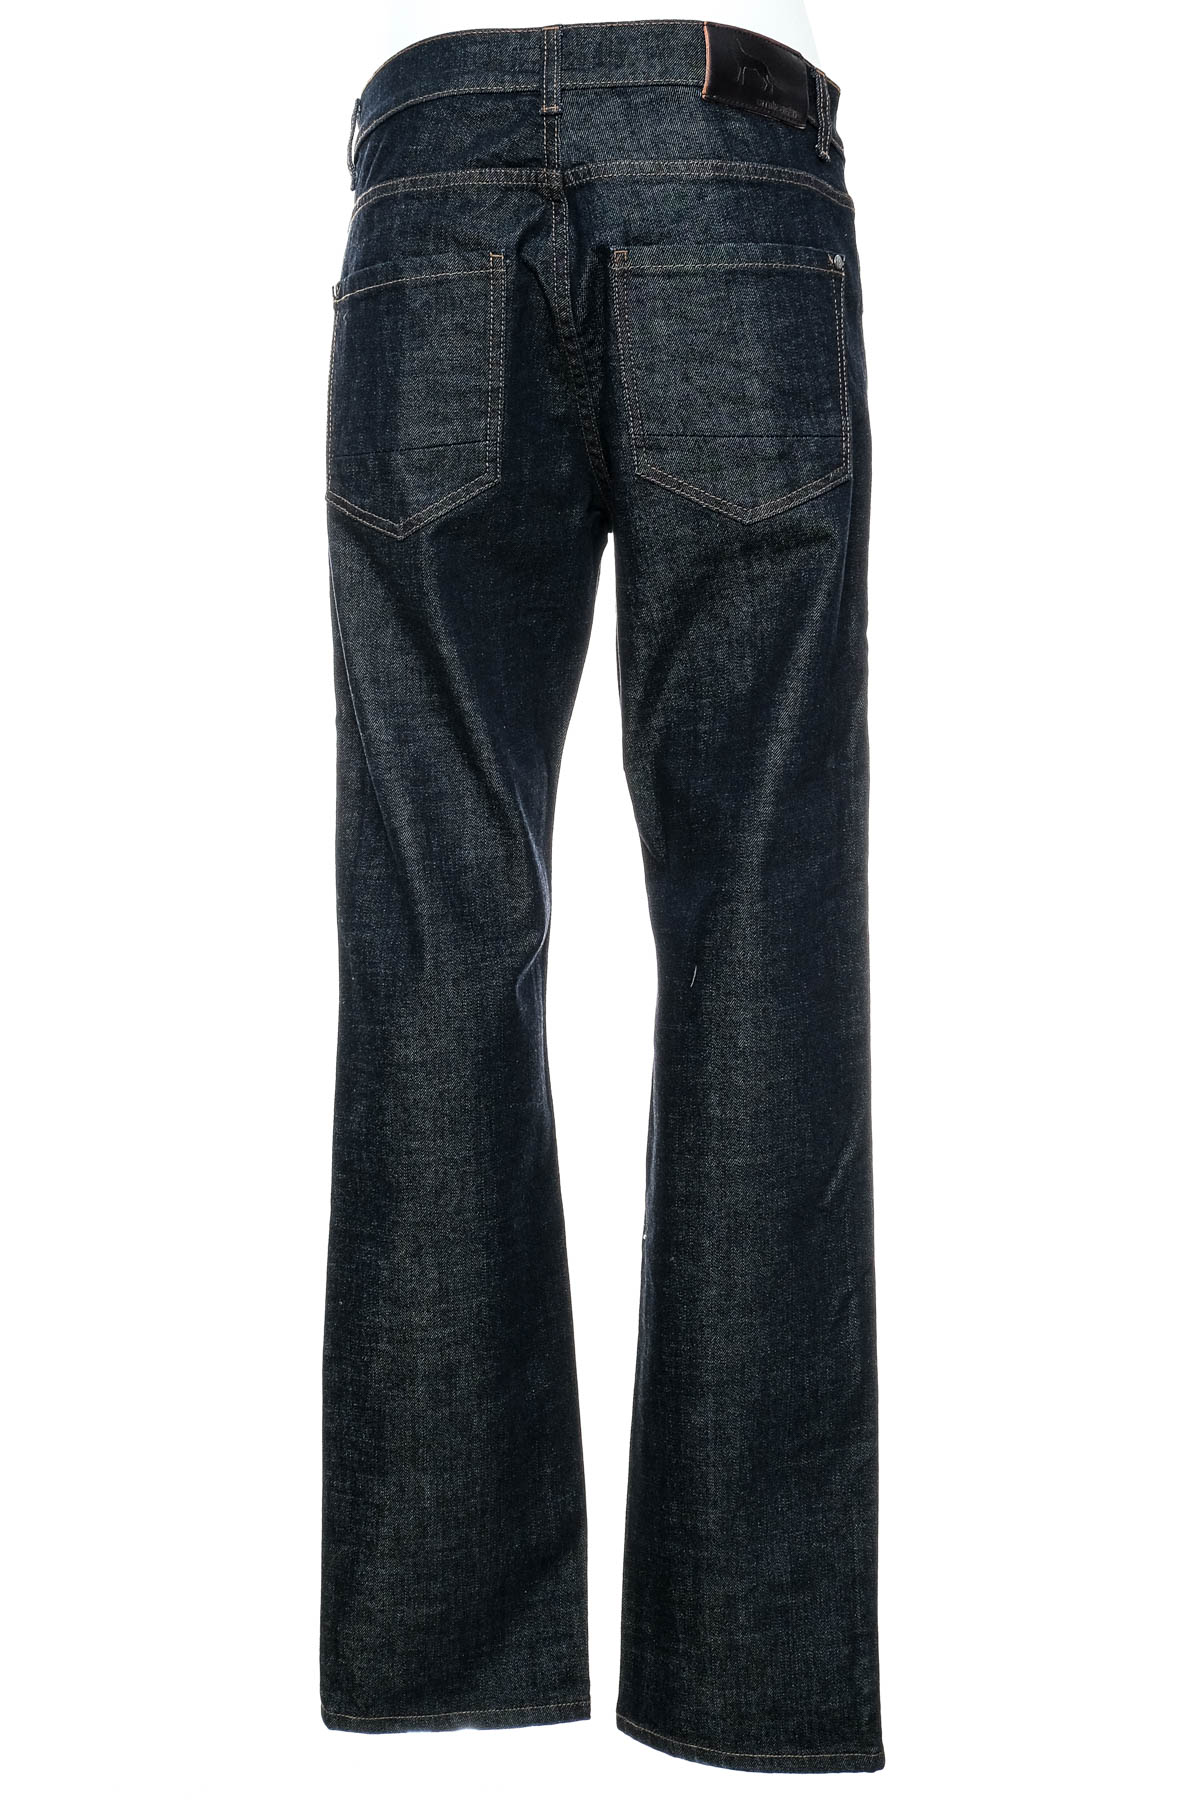 Men's jeans - Emilio Adani - 1